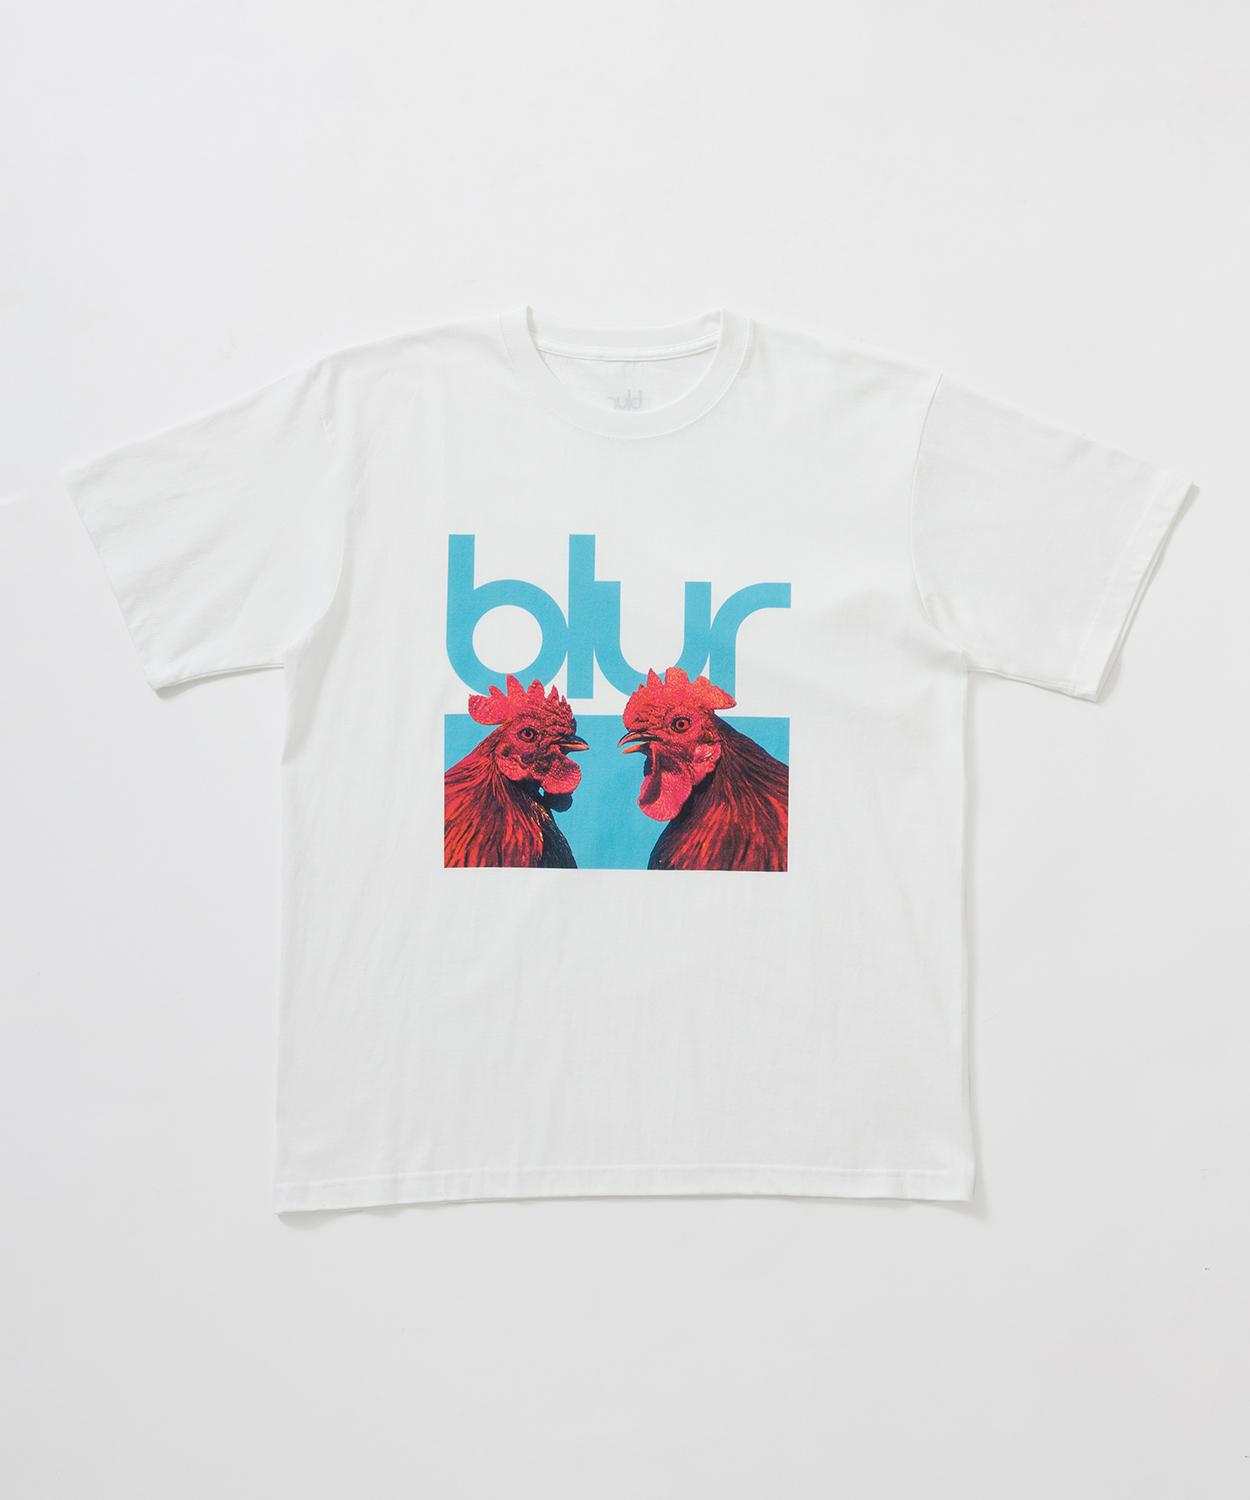 ロックバンド「Blur」の6種類のTシャツが発売！ - Slide:7